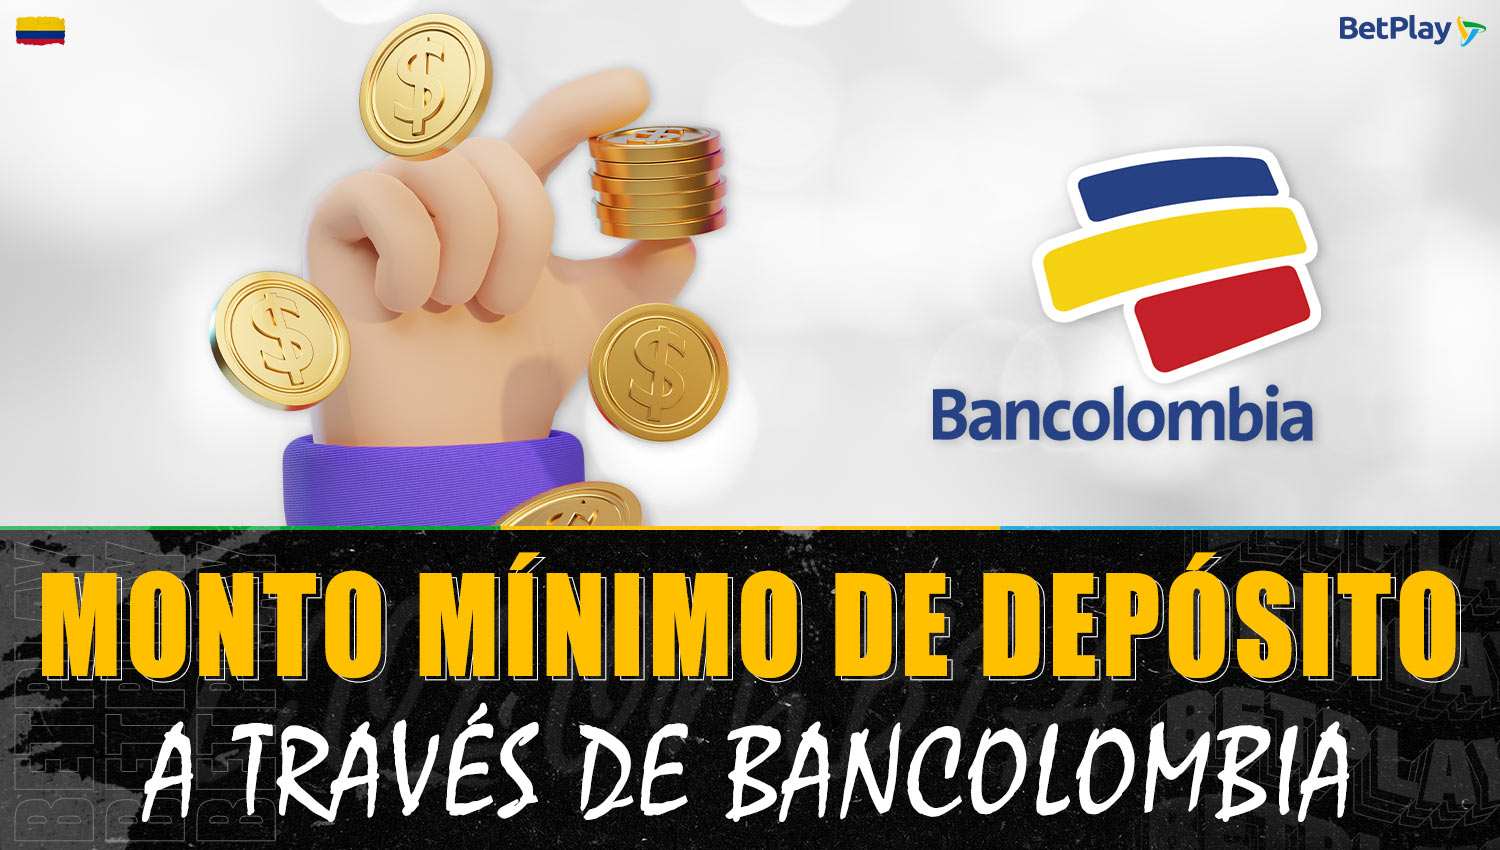 Información sobre el depósito mínimo a través de Bancolombia en la plataforma Betplay